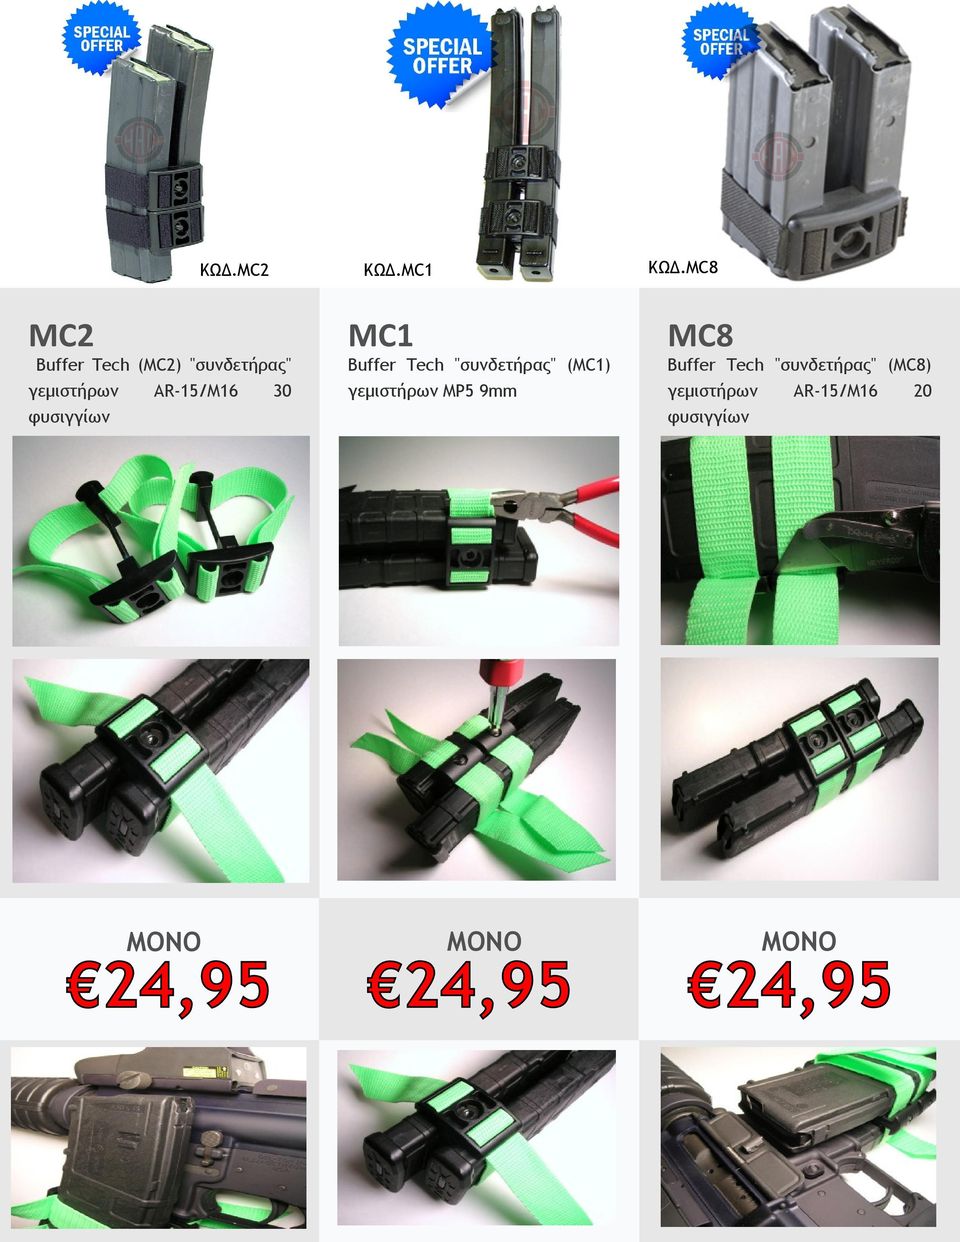 30 φυσιγγίων MC1 Buffer Tech "συνδετήρας" (MC1) γεμιστήρων